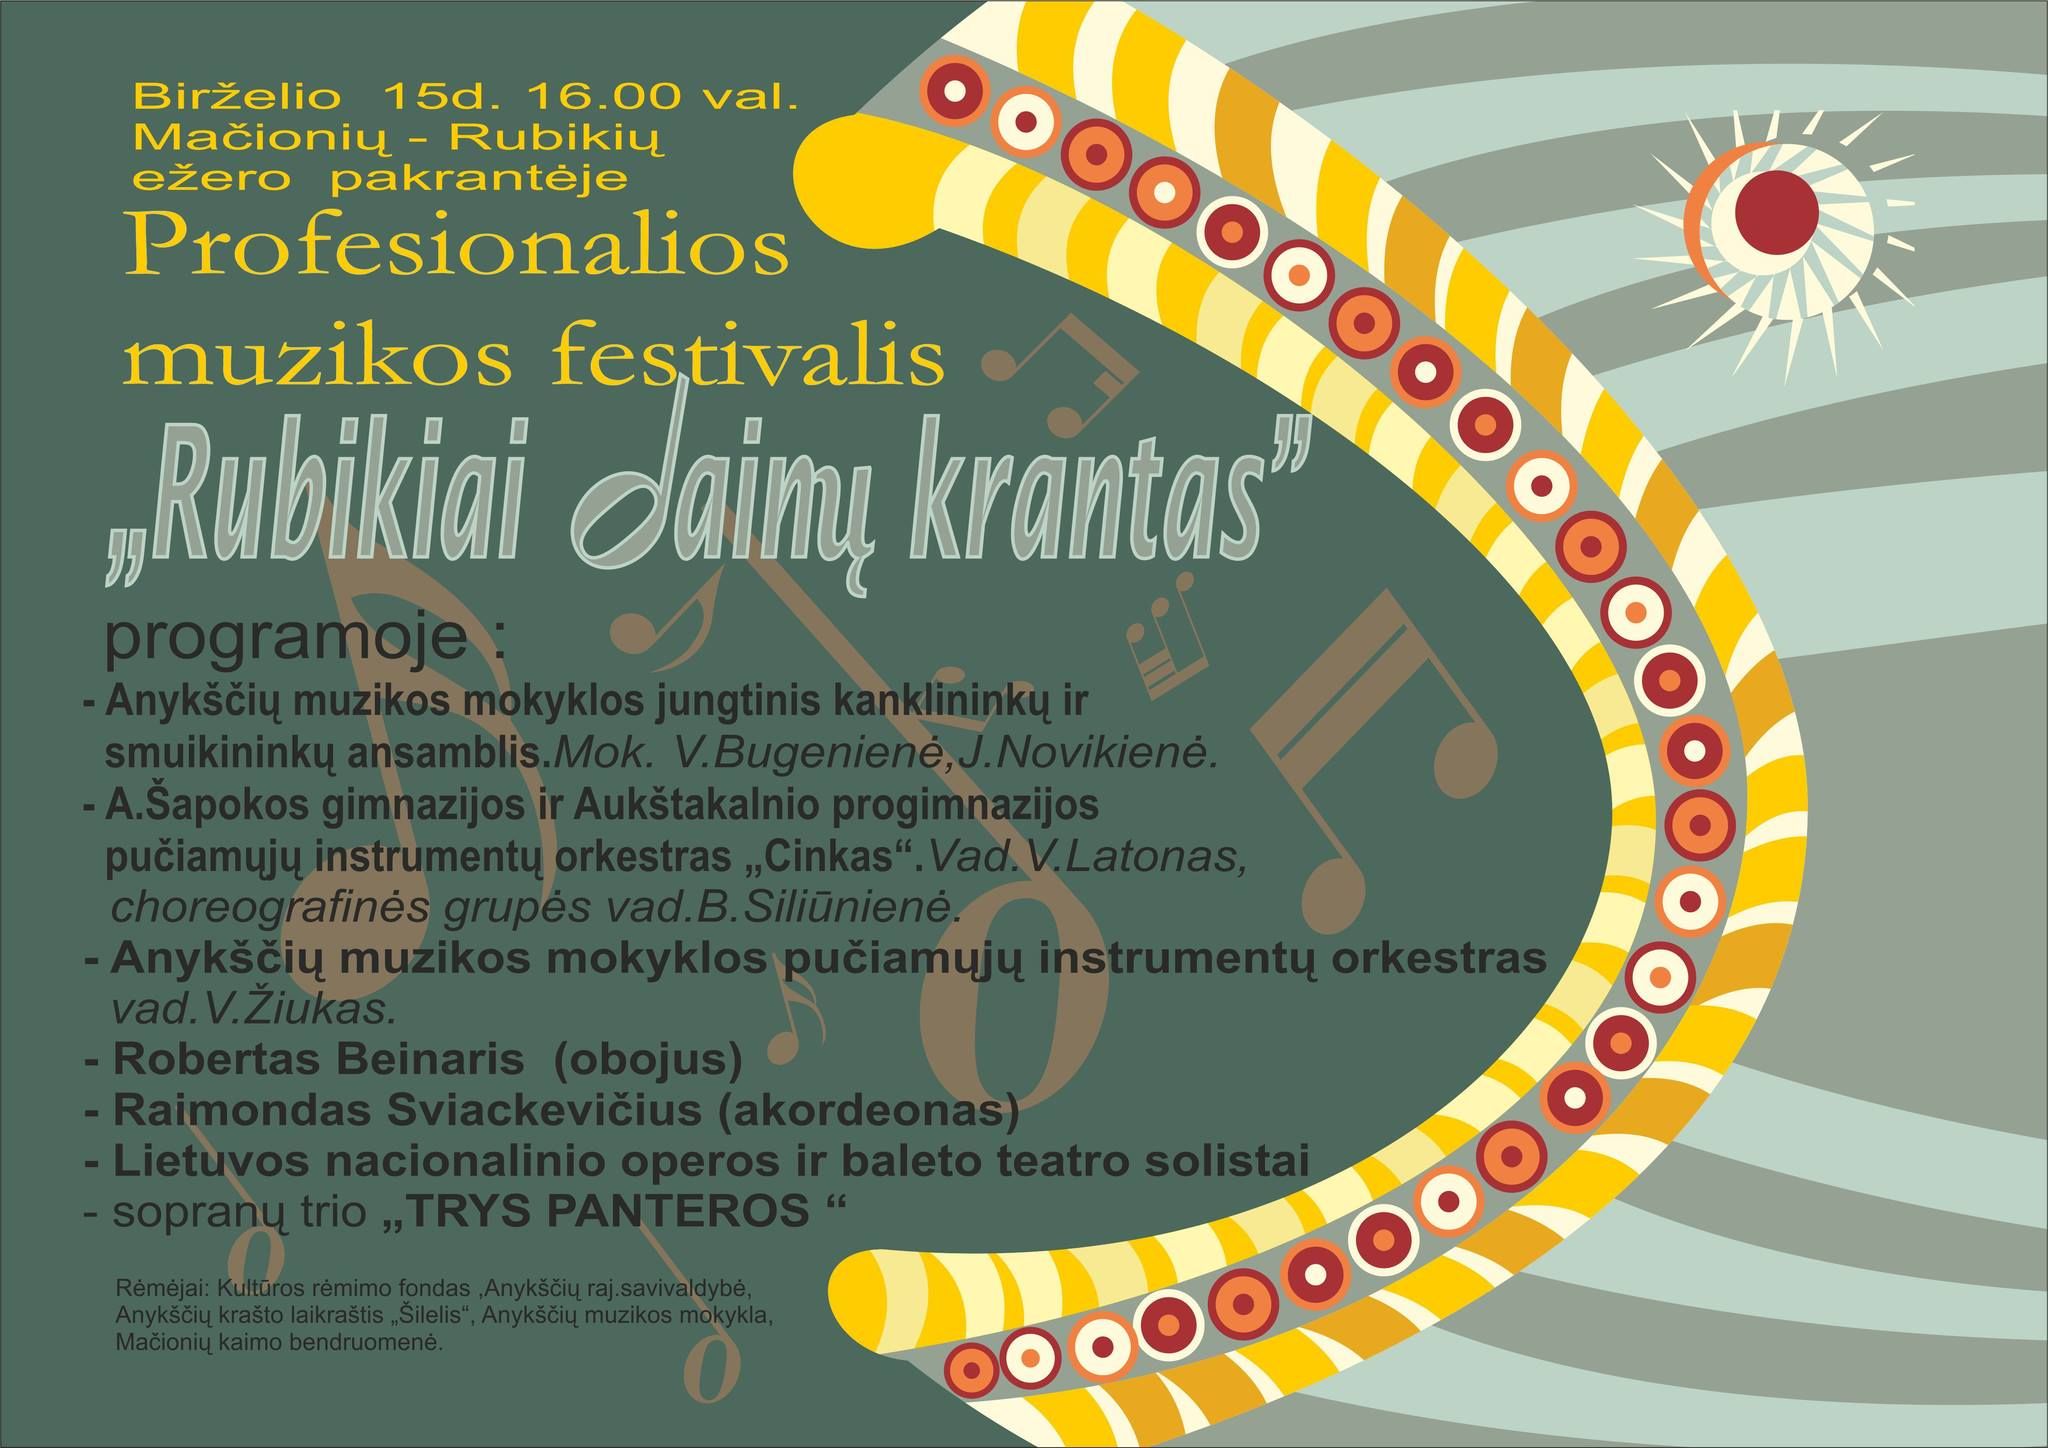 Profesionalios muzikos festivalis „Rubikiai - dainų krantas" (2013)